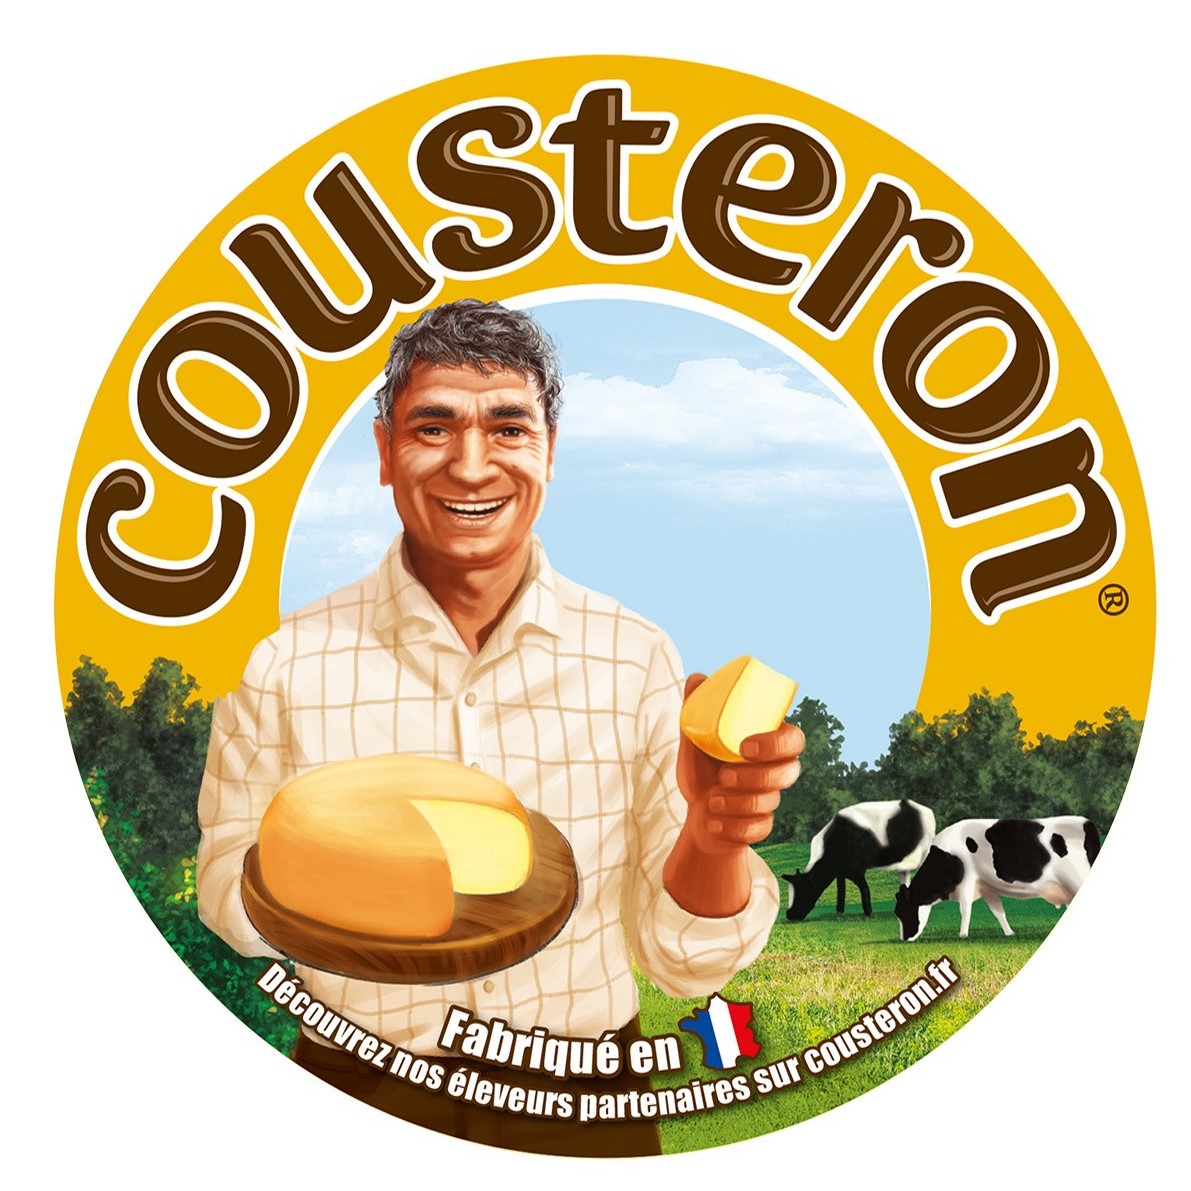 Cousteron